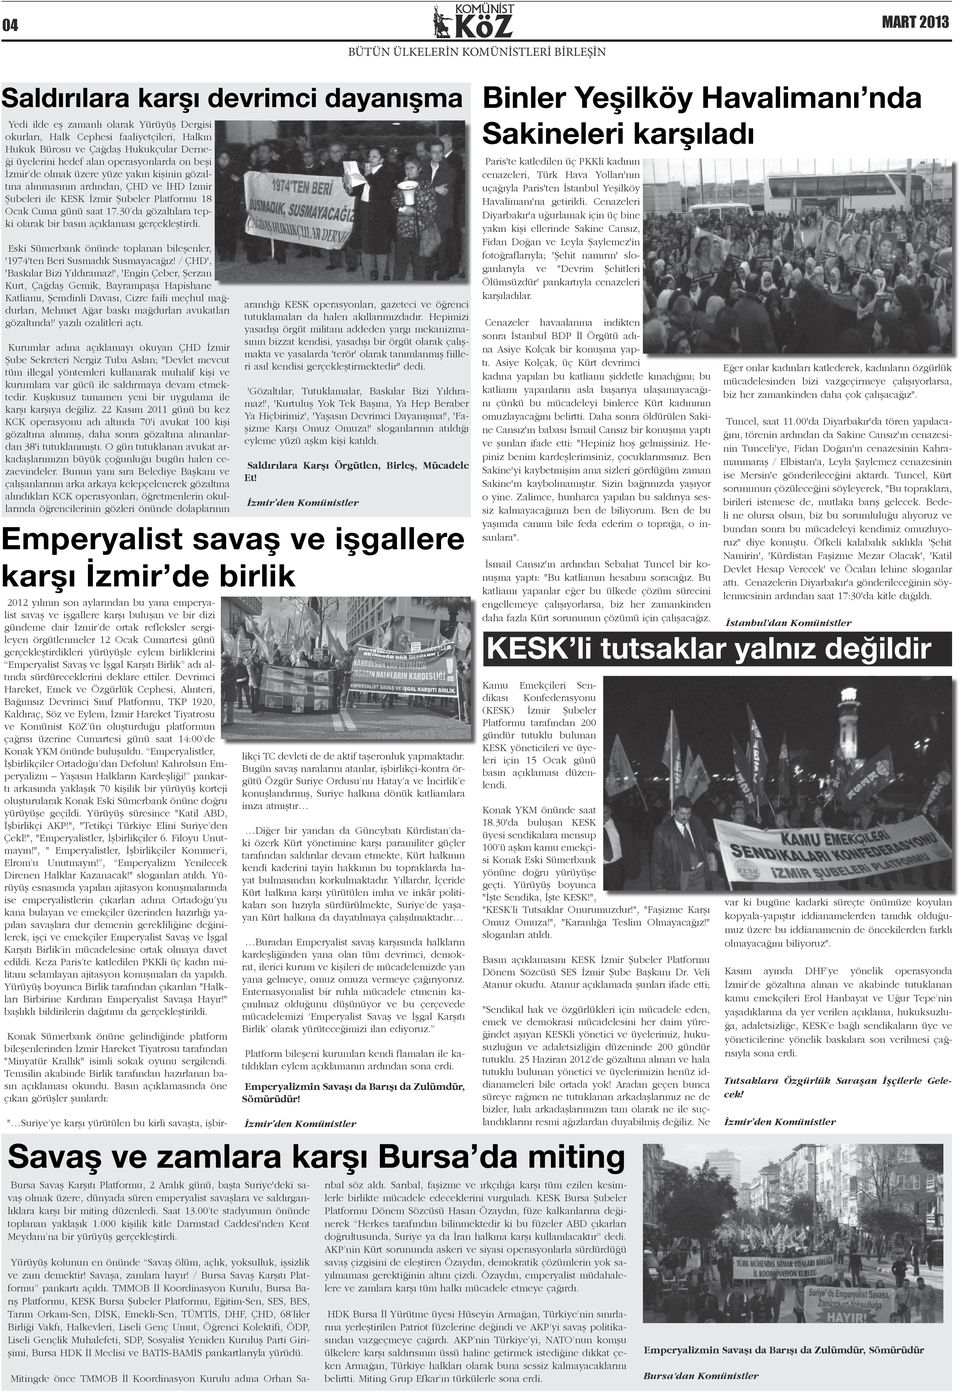 günü saat 17.30 da gözaltılara tepki olarak bir basın açıklaması gerçekleştirdi. Eski Sümerbank önünde toplanan bileşenler, '1974'ten Beri Susmadık Susmayacağız! / ÇHD', 'Baskılar Bizi Yıldıramaz!